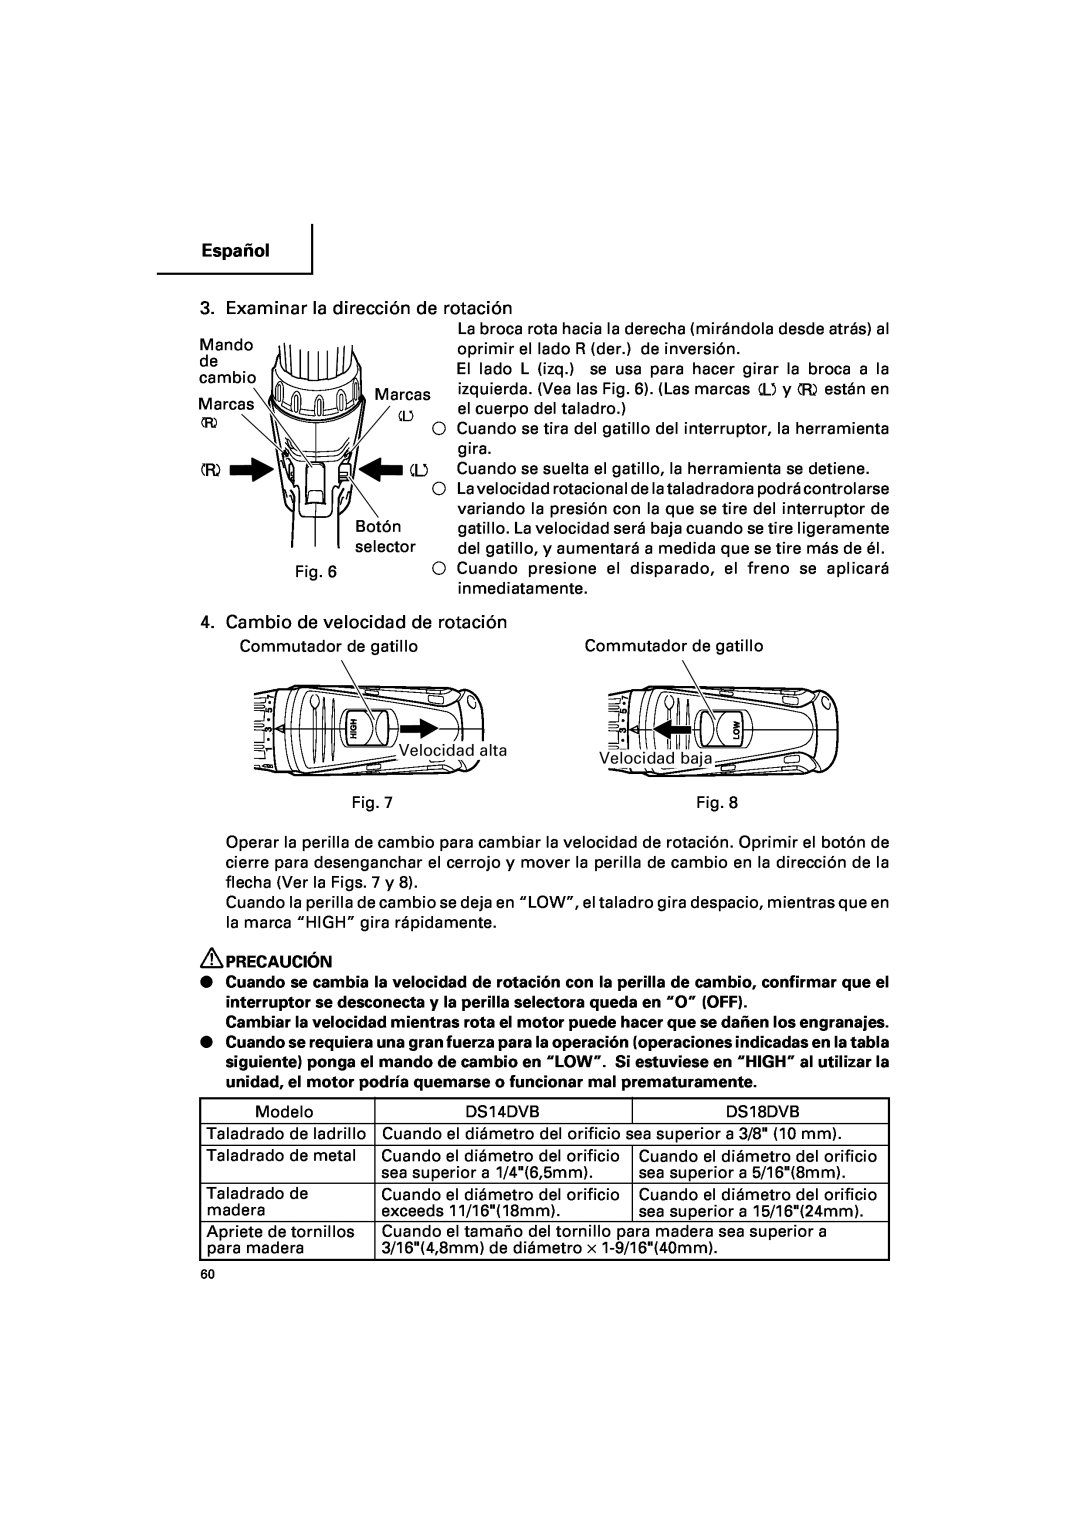 Hitachi DV 18DV, DV 14DV instruction manual Examinar la dirección de rotación, Cambio de velocidad de rotación, Español, R L 